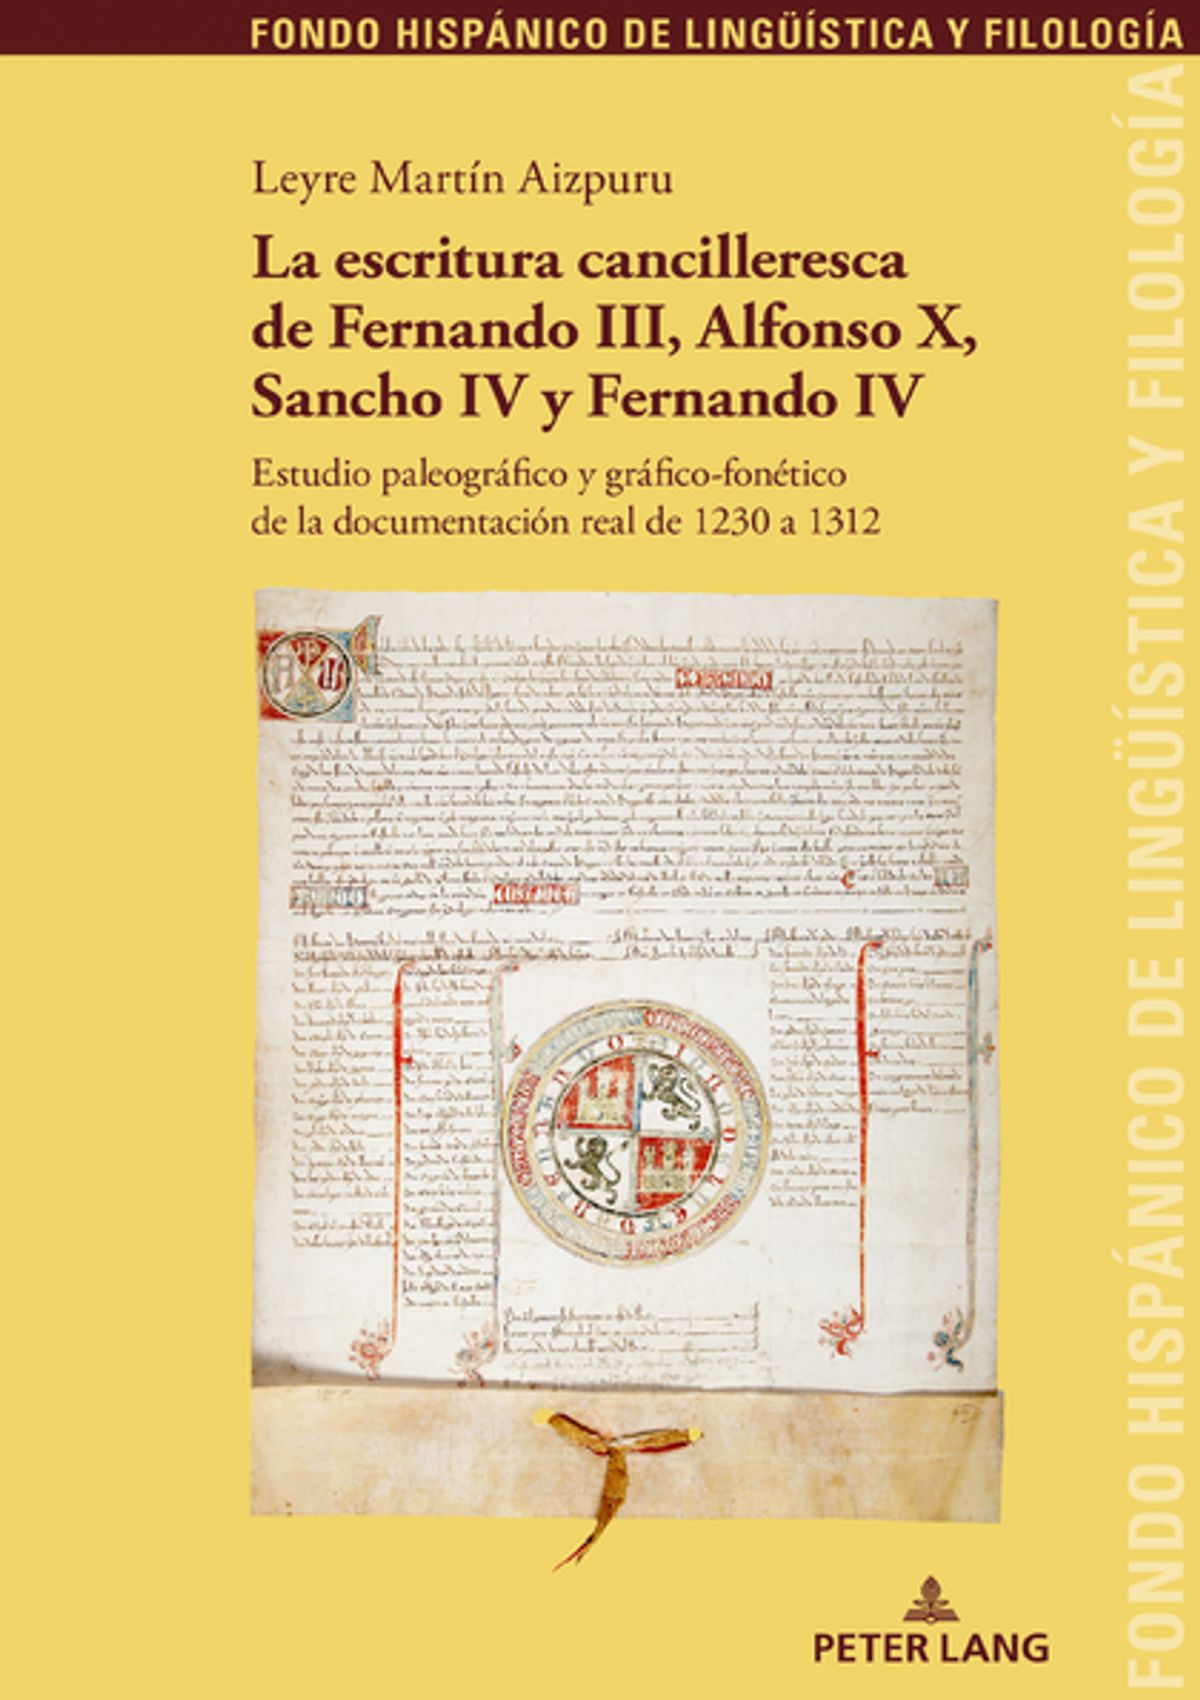 Imagen de portada del libro La escritura cancilleresca de Fernando III, Alfonso X, Sancho IV y Fernando IV